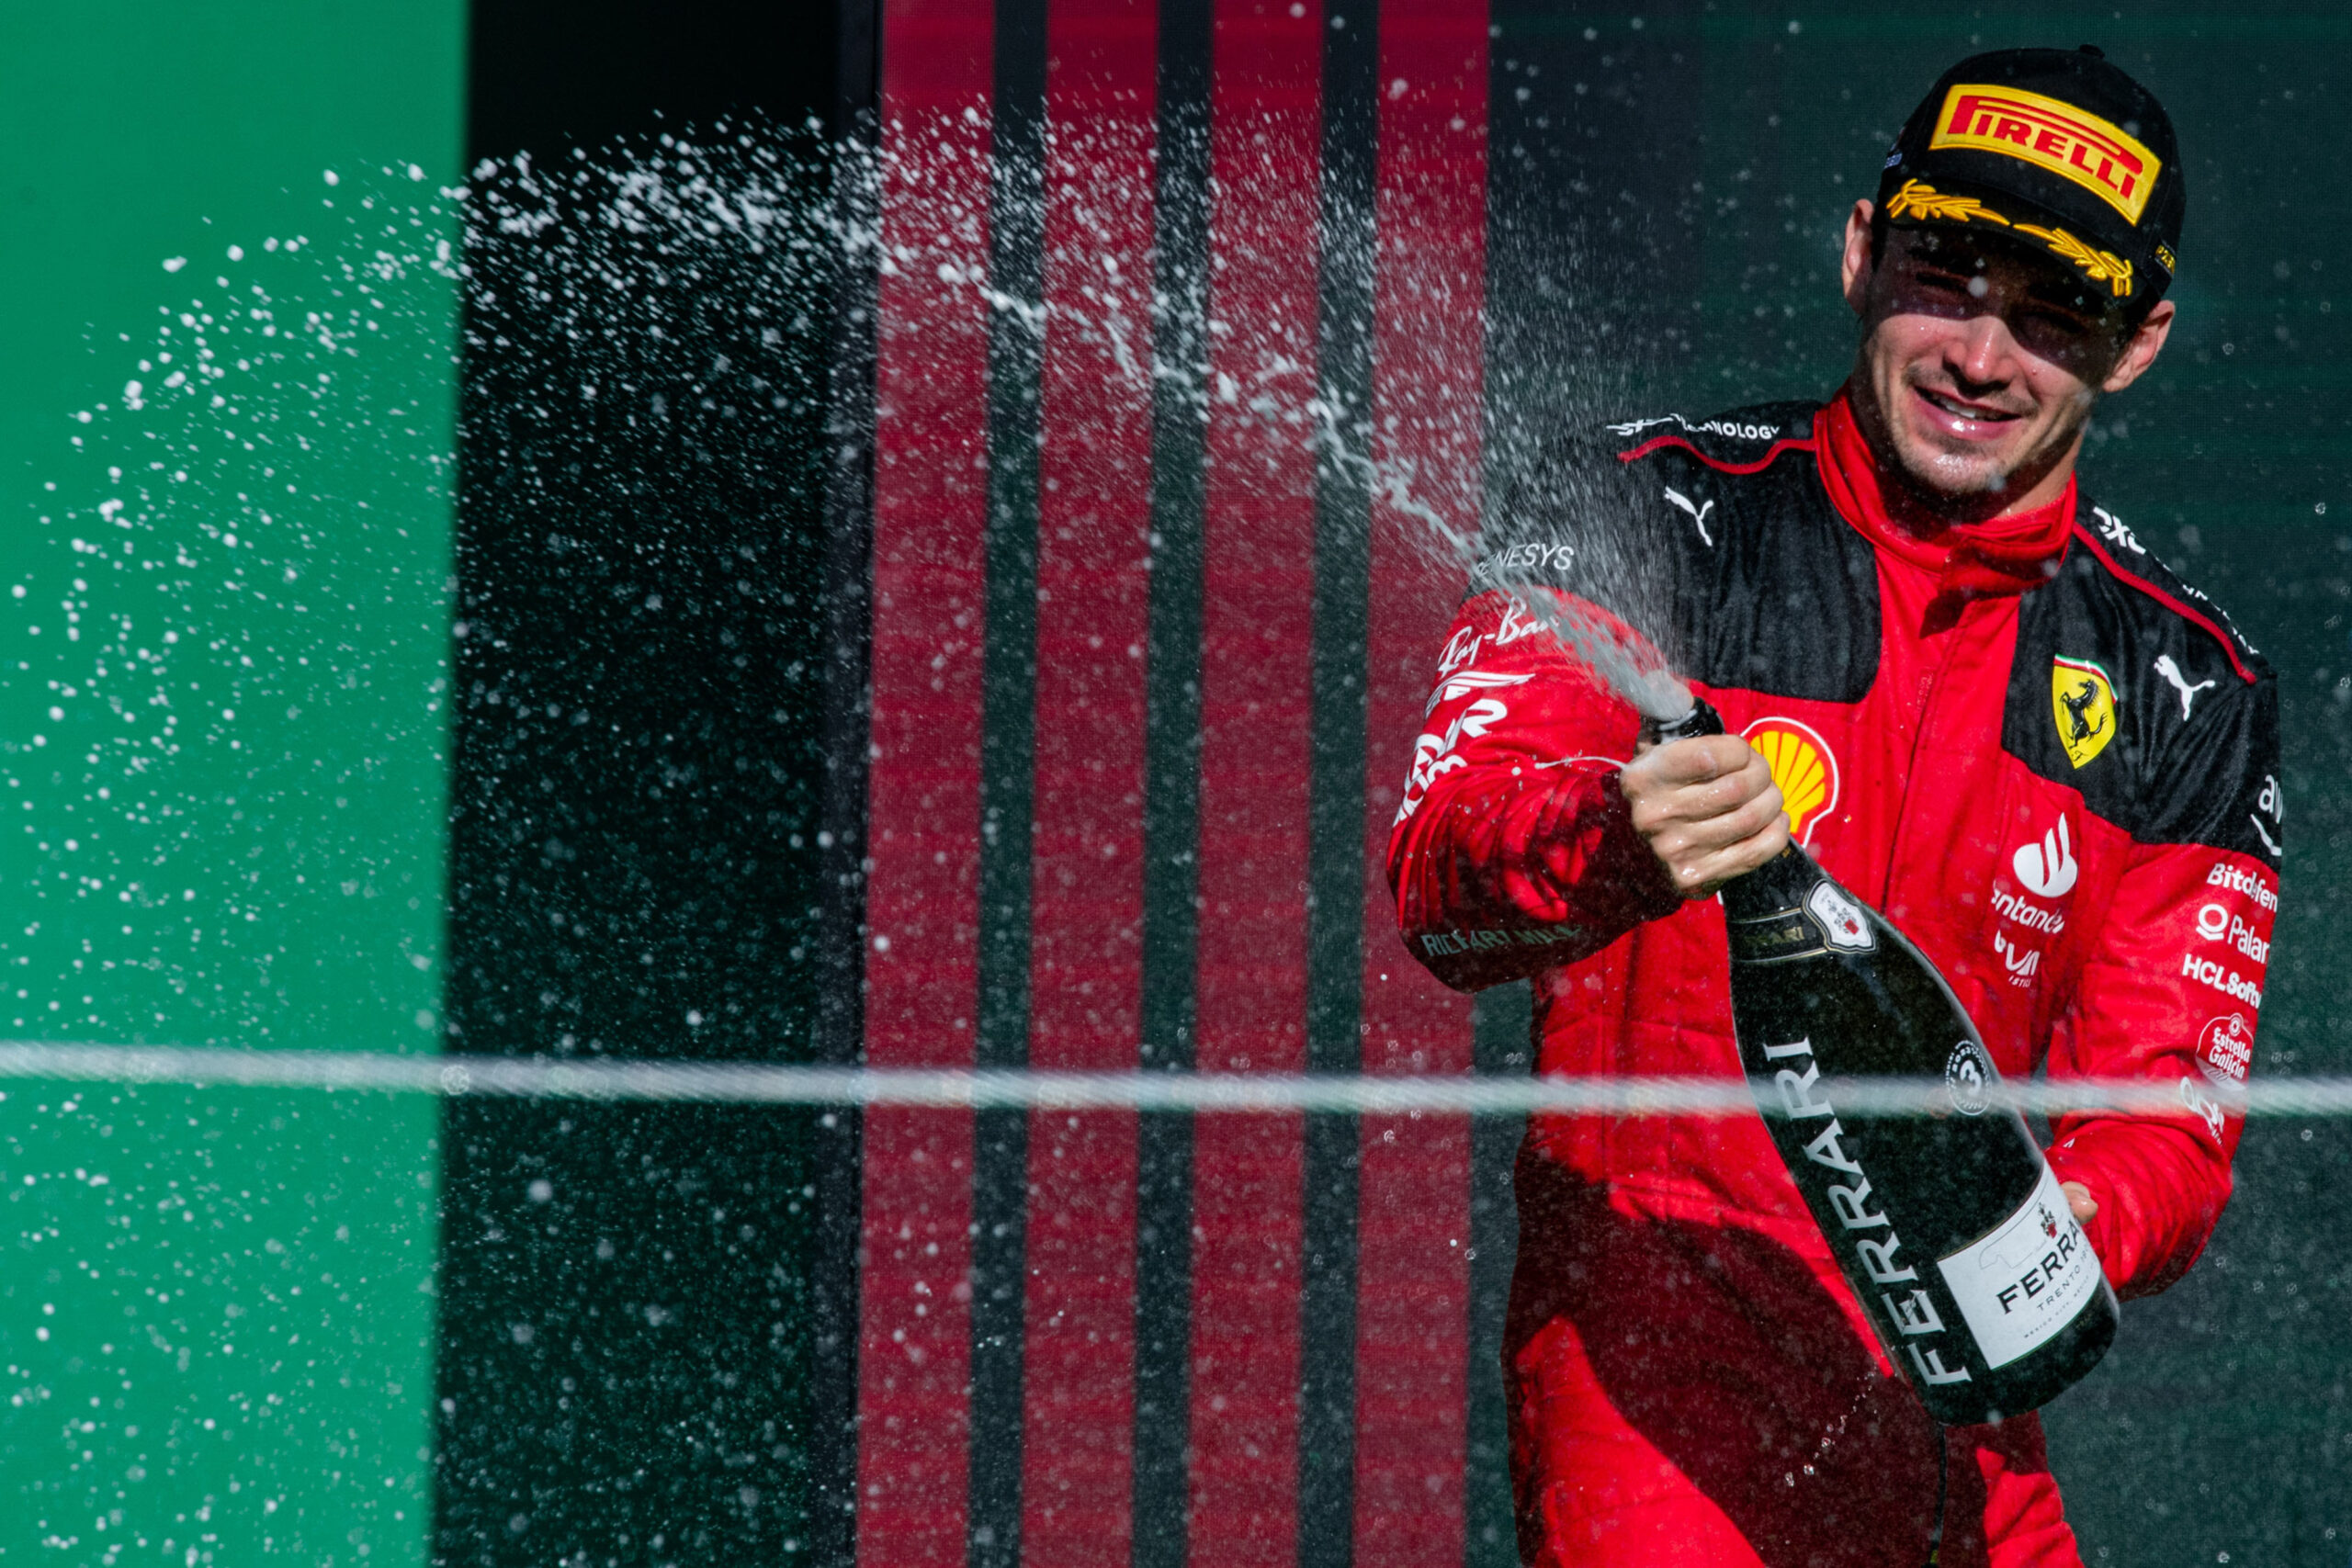 Mexico City Grand Prix – Charles sul podio, Carlos quarto anche in campionato